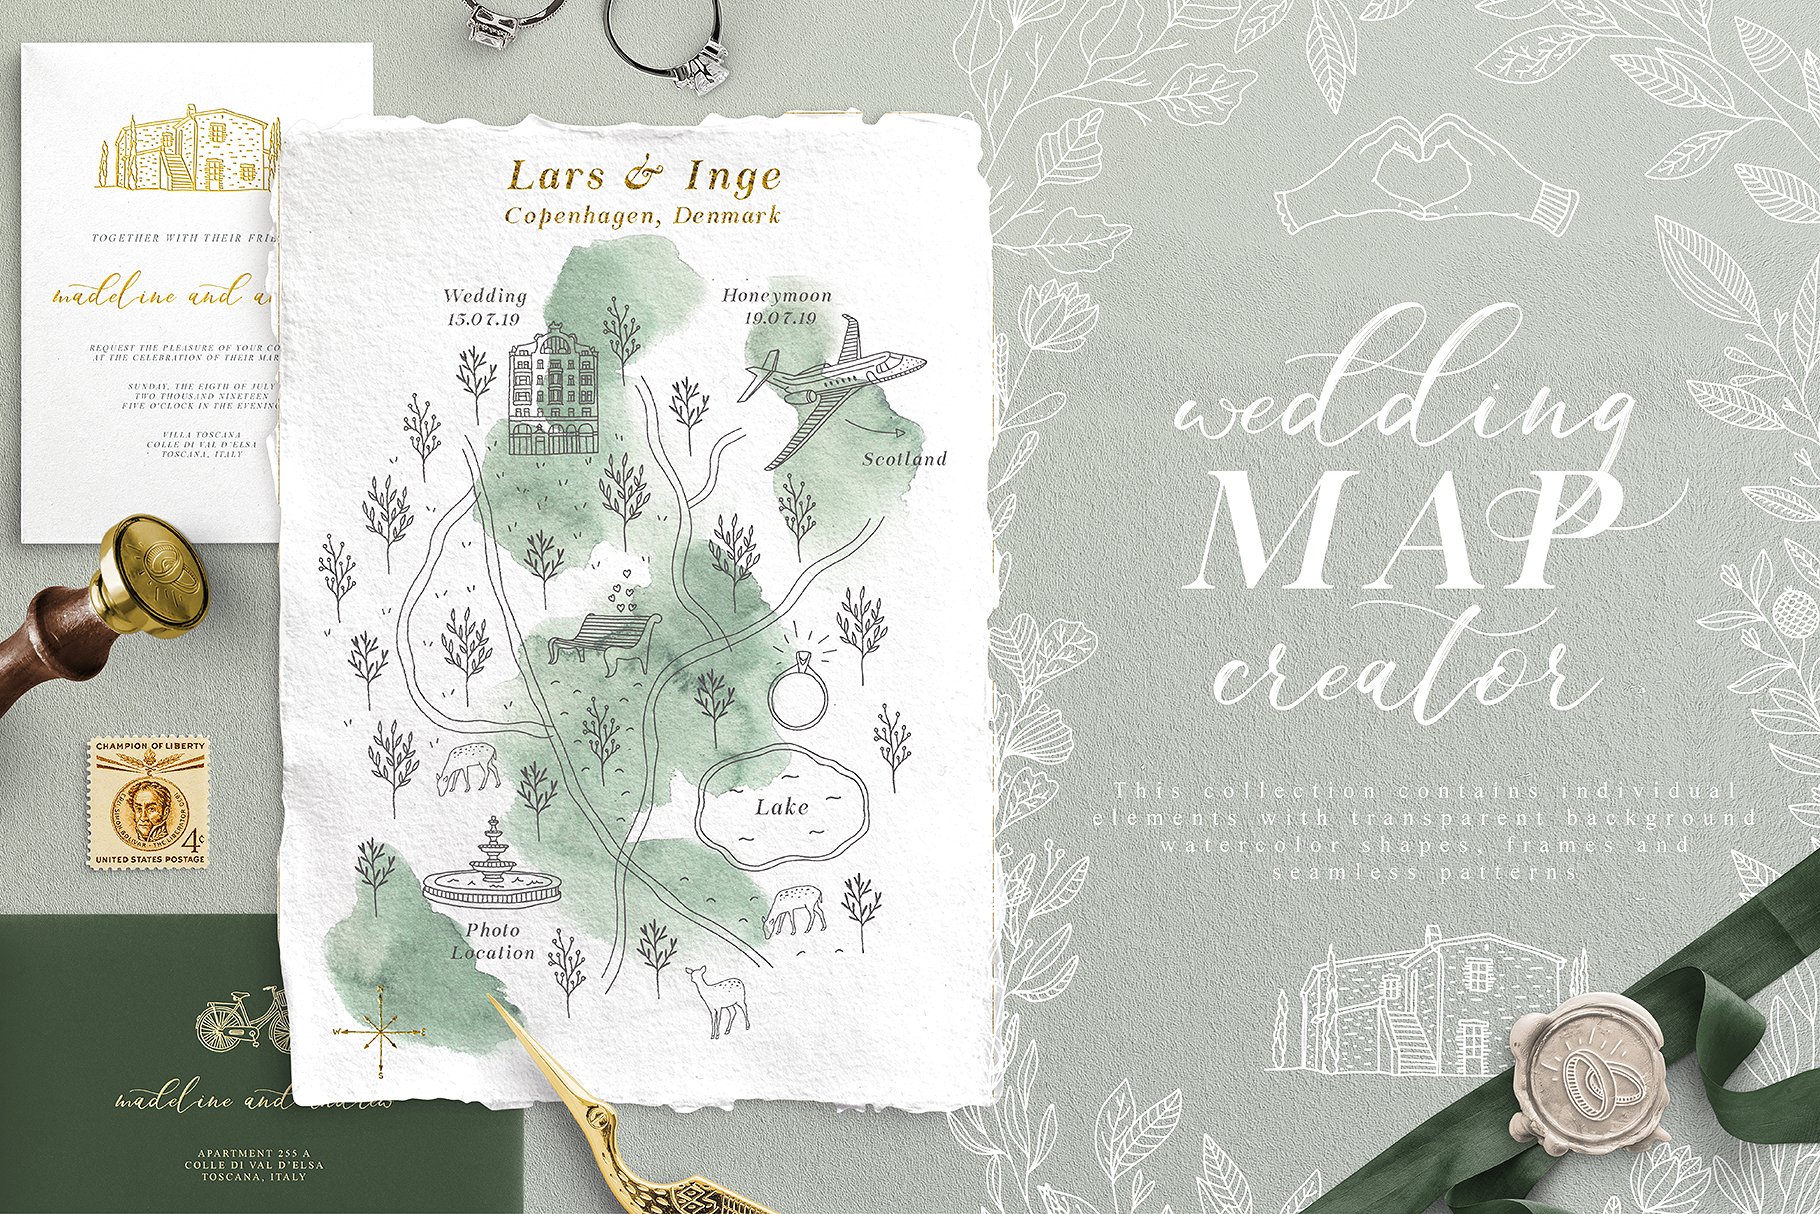 创意文艺风格婚礼邀请函地图设计素材包 Wedding Map Creator Collection插图